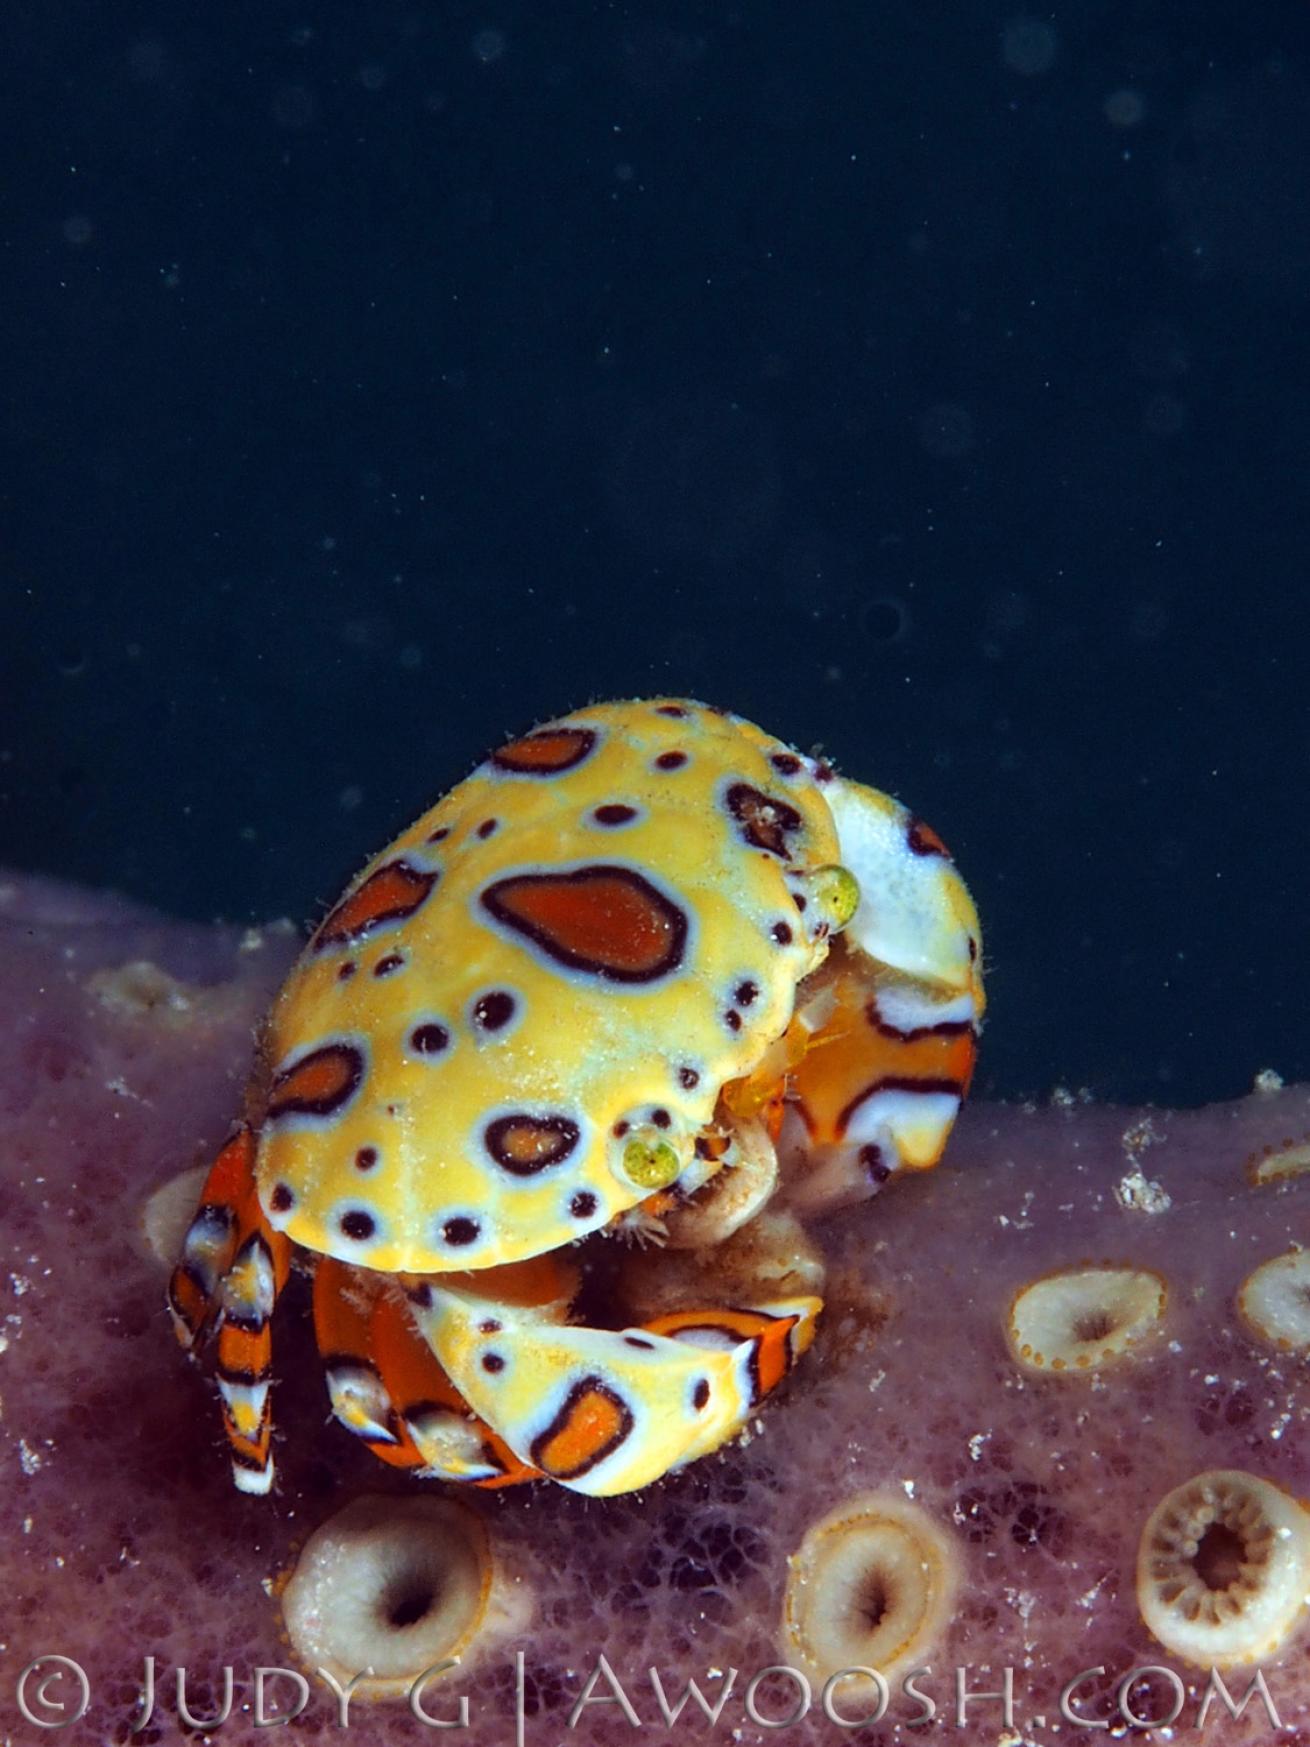 Pretty Gaudy Clown Crab Underwater Photo Yellow and Orange